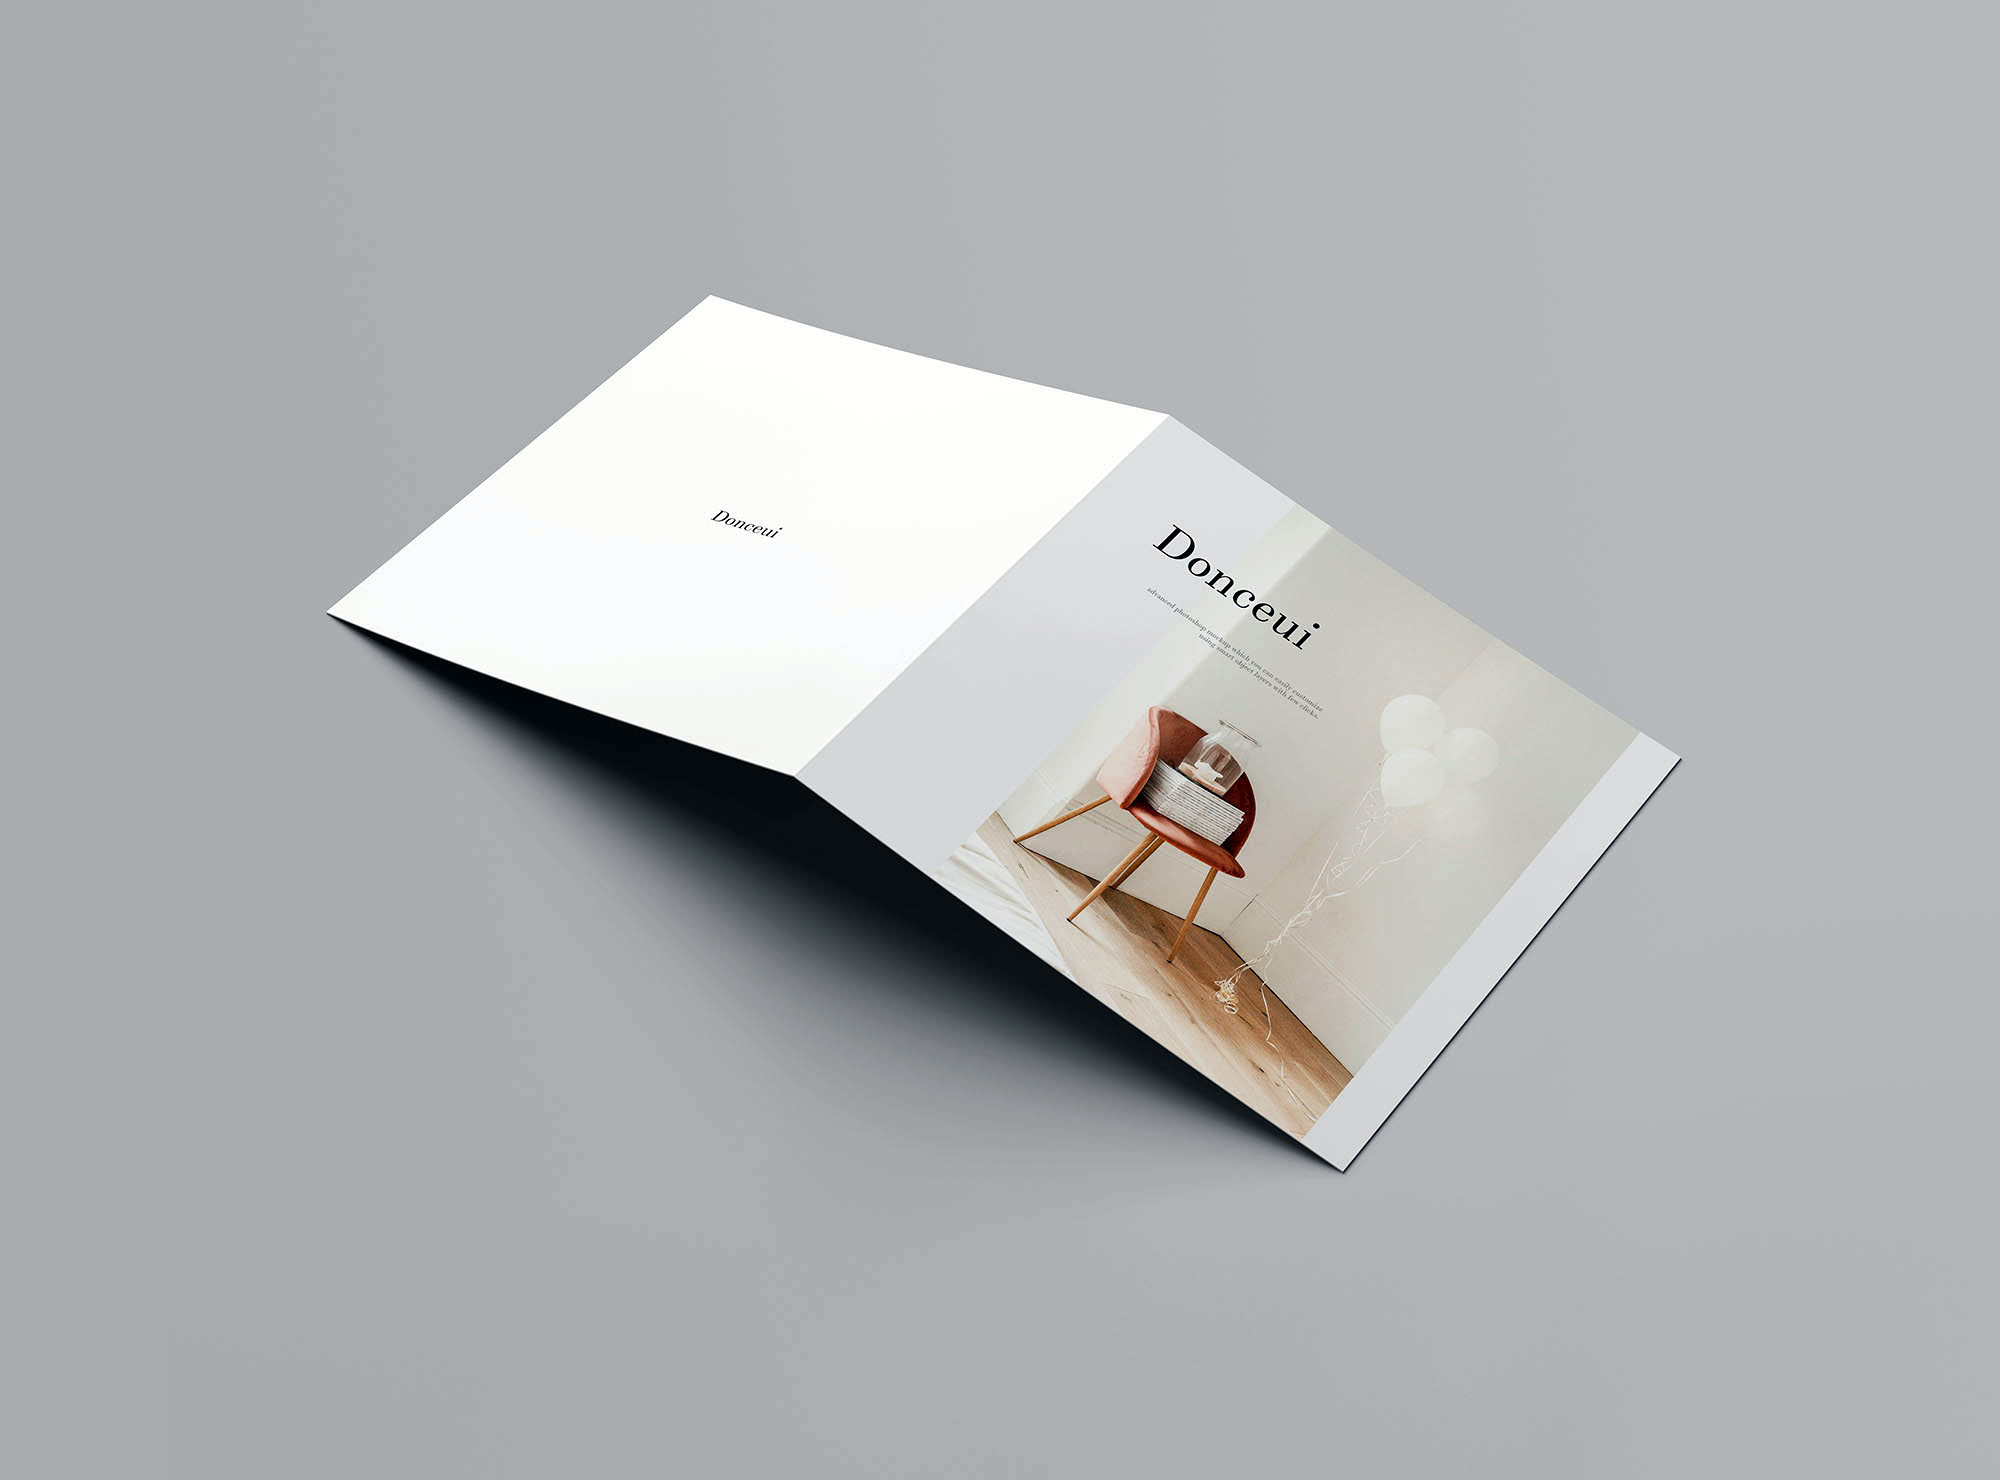 方形双折叠小册子封面&内页设计图样机第一素材精选 Square Bifold Brochure Mockup插图(6)